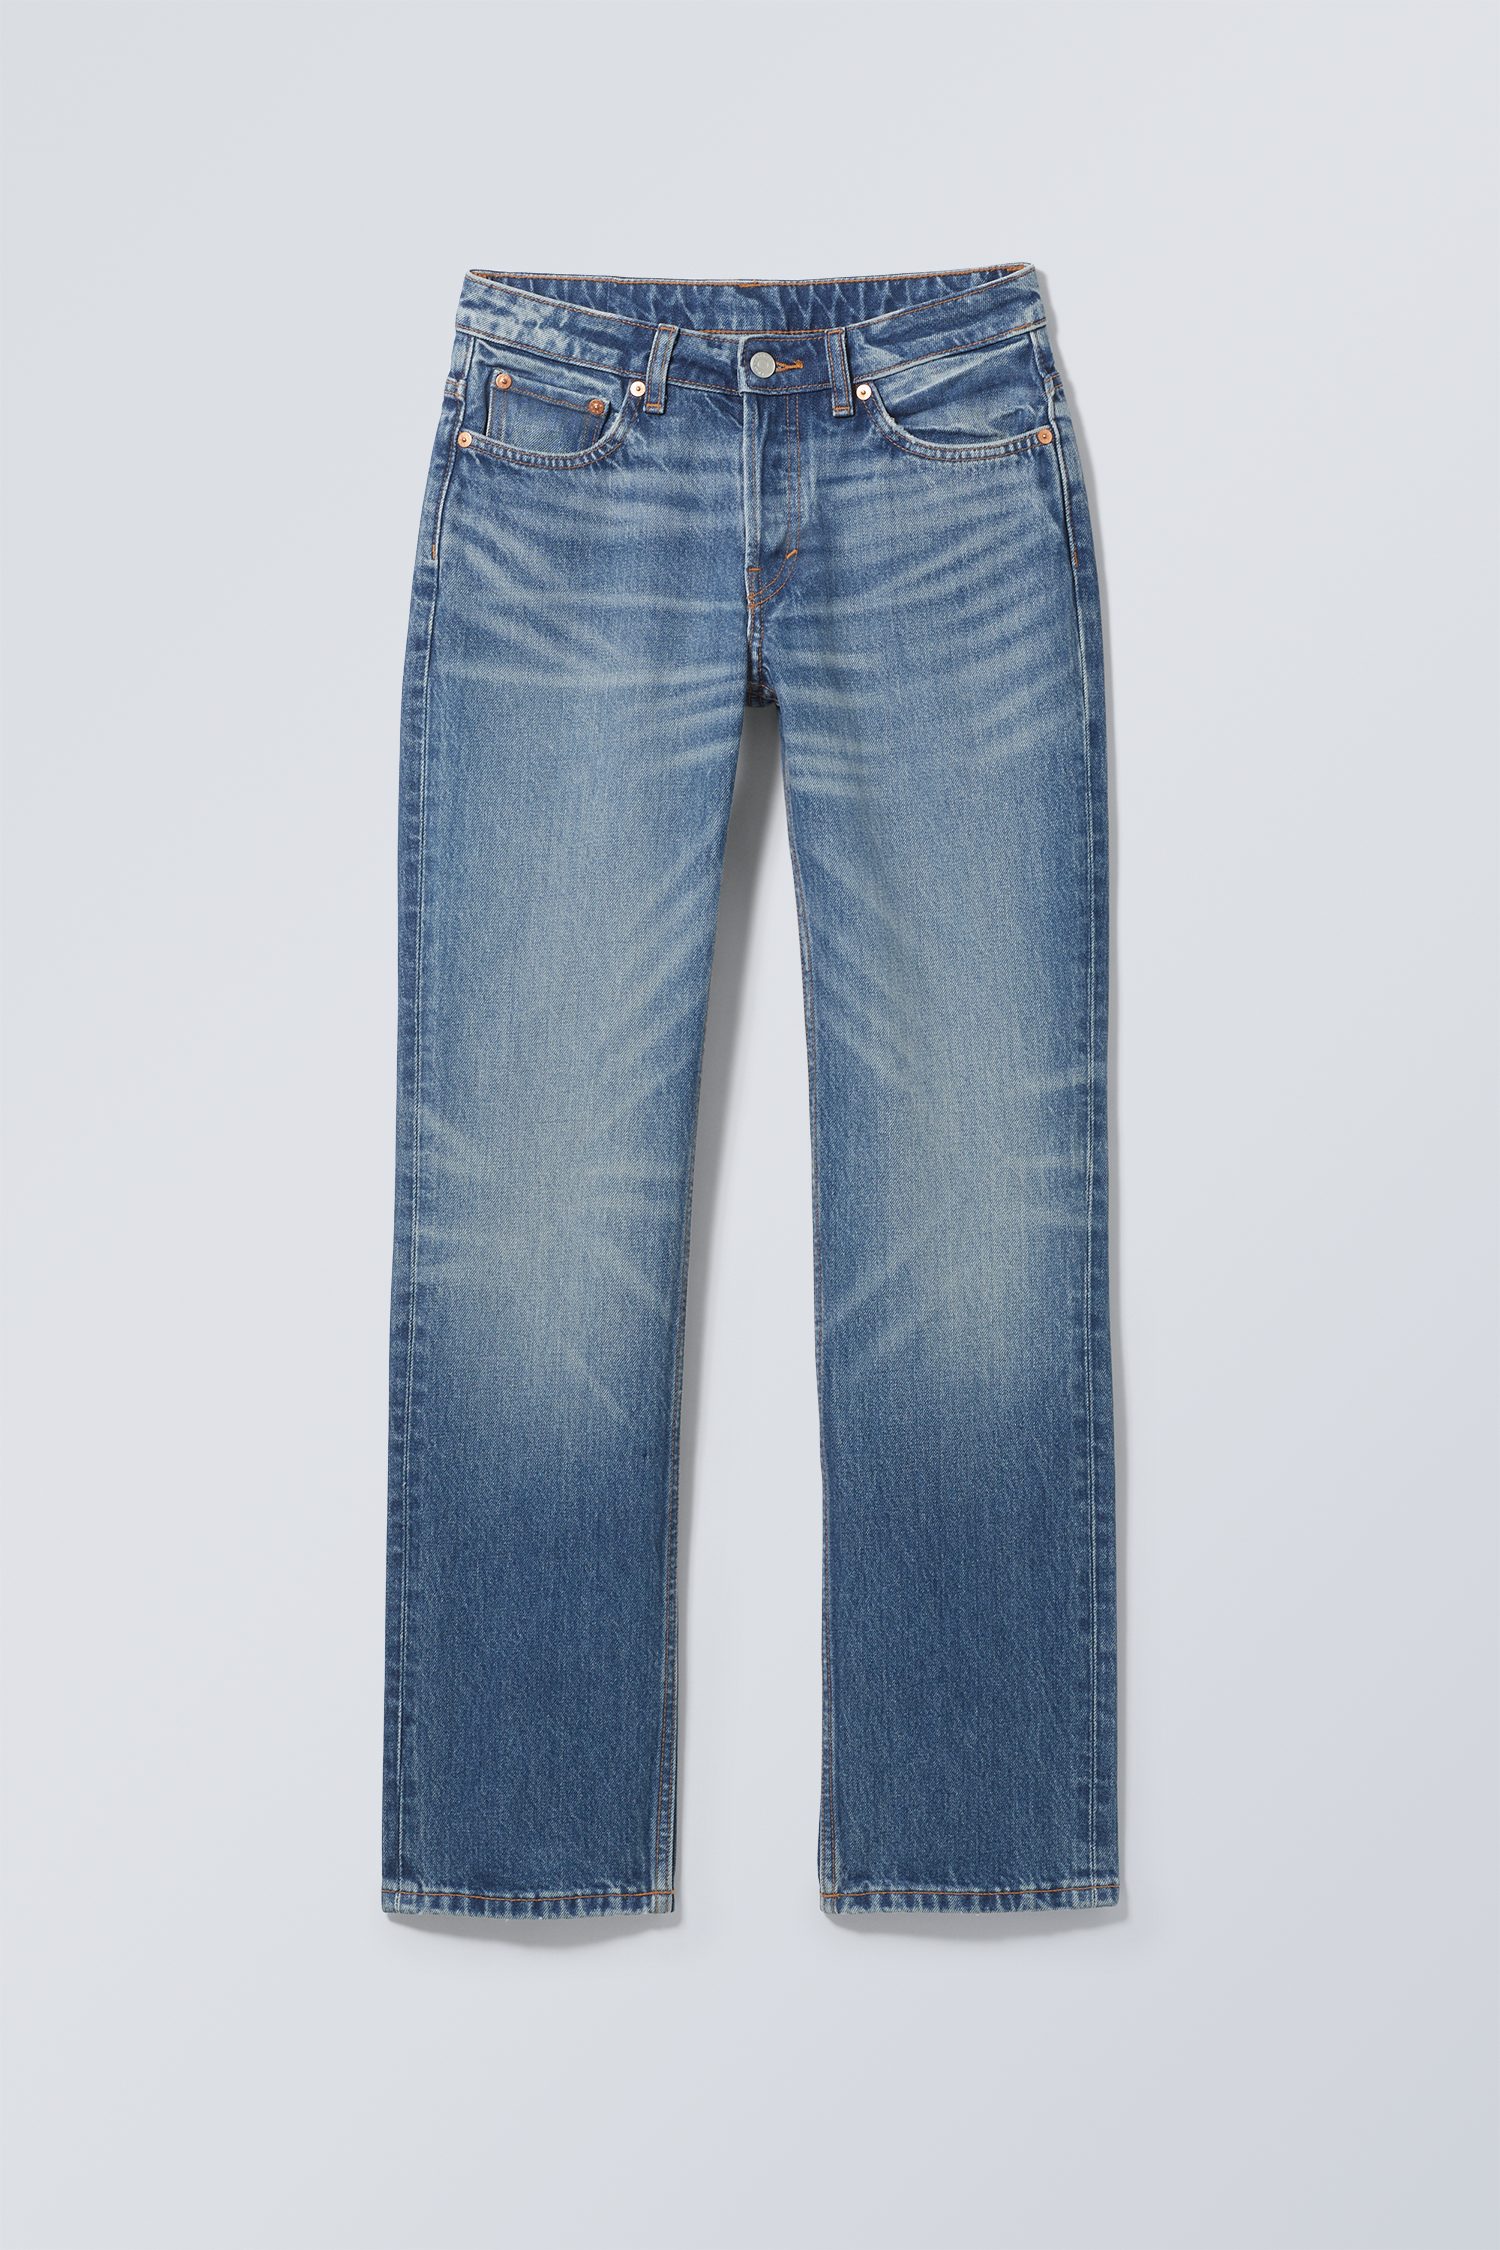 Weekday Jeans Pin mit geradem Bein Wellenblau, Straight in Größe 25/34. Farbe: Wave blue von Weekday